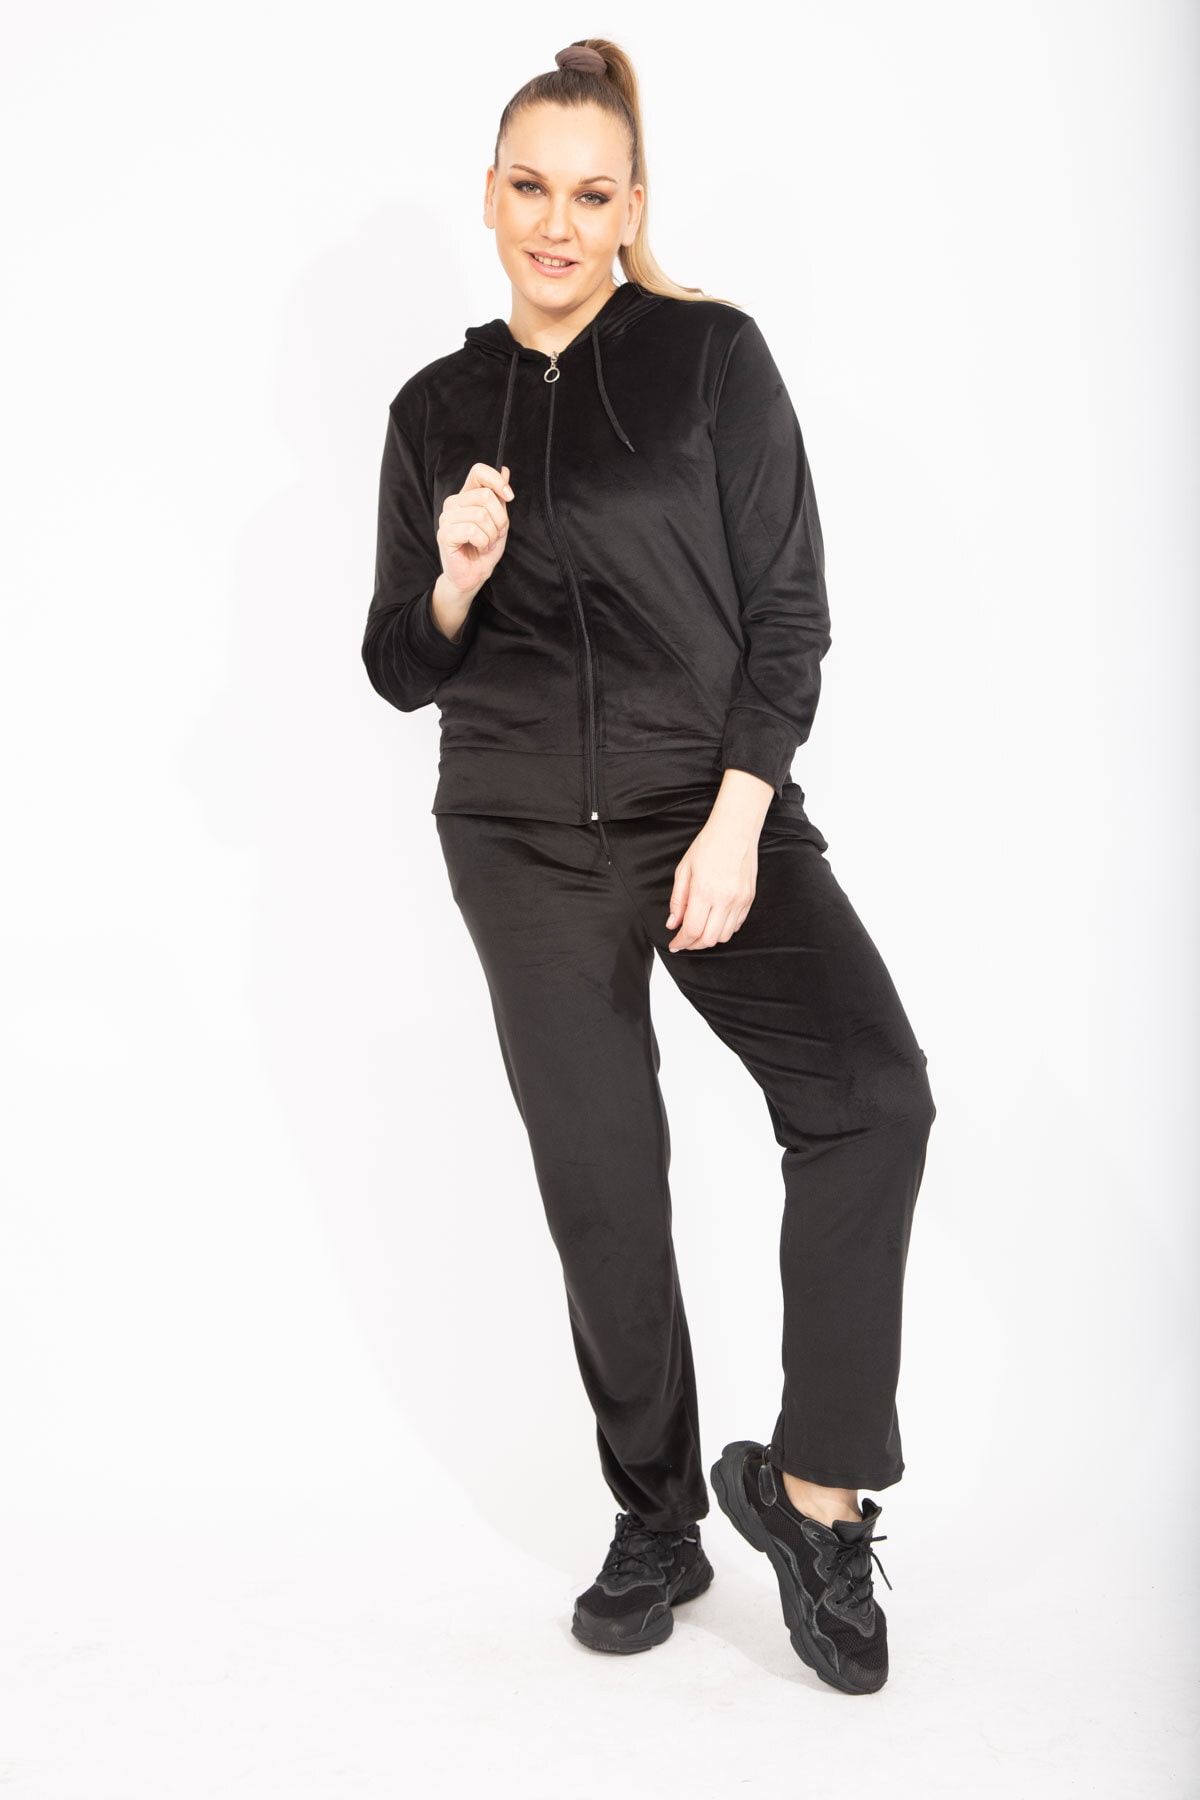 Şans Kadın Büyük Beden Siyah Kadife Kumaş Sweatshirt Pantolon Ikili Takım 65n35474